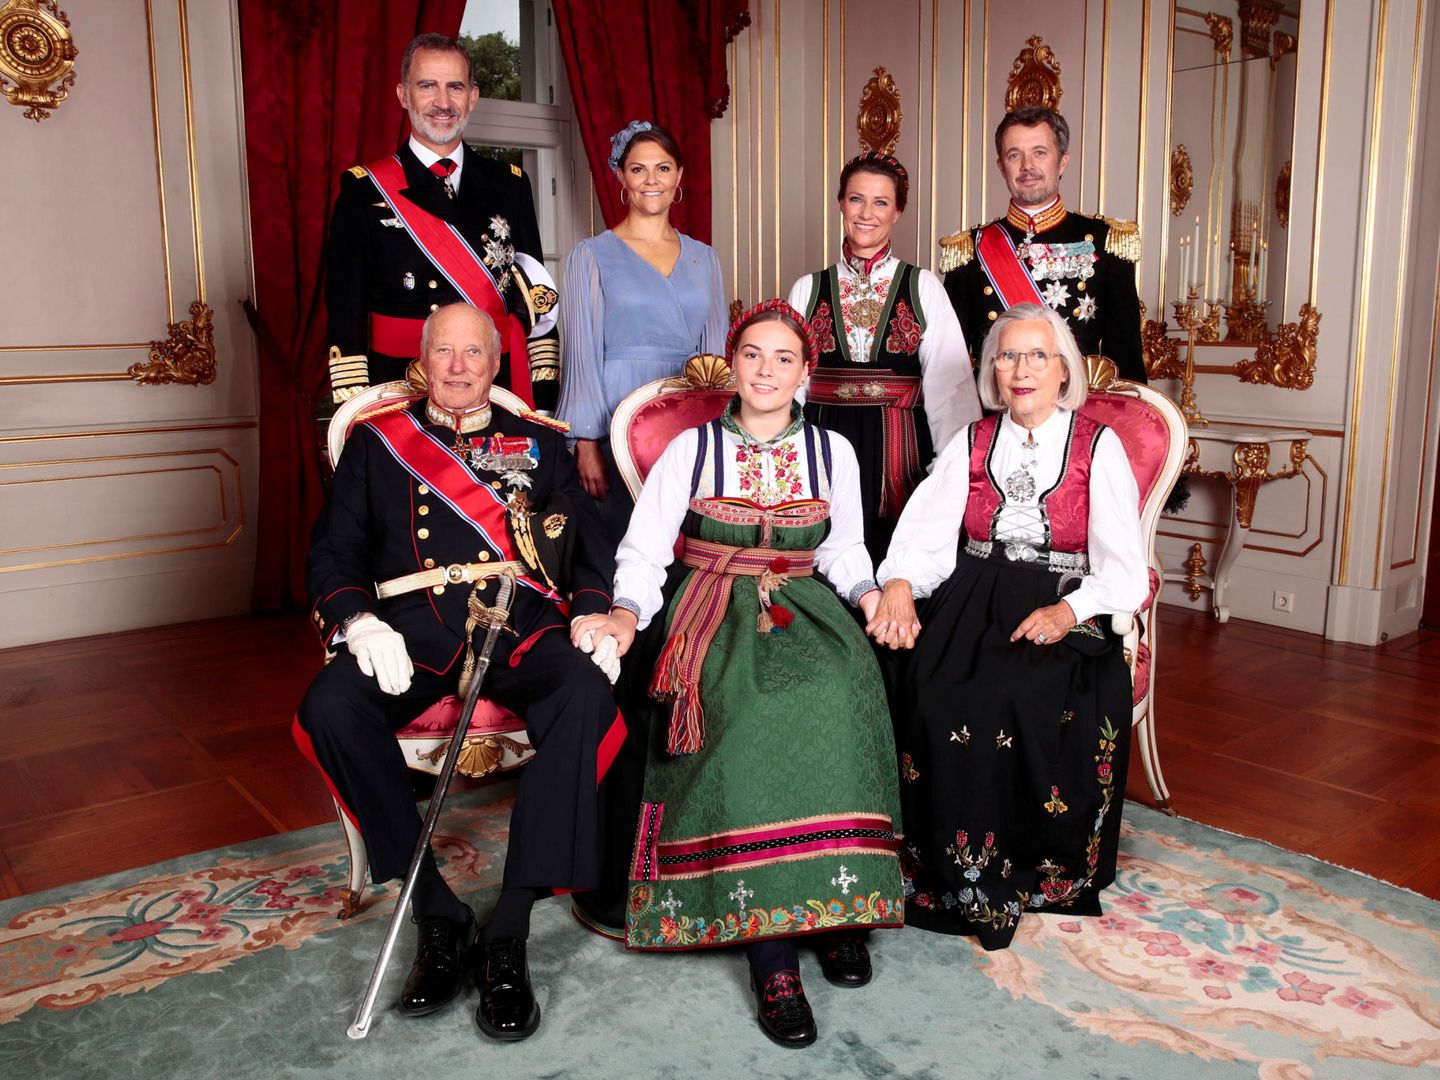 Fotografía oficial de la confirmación de la princesa Ingrid con sus padrinos. (Reuters)